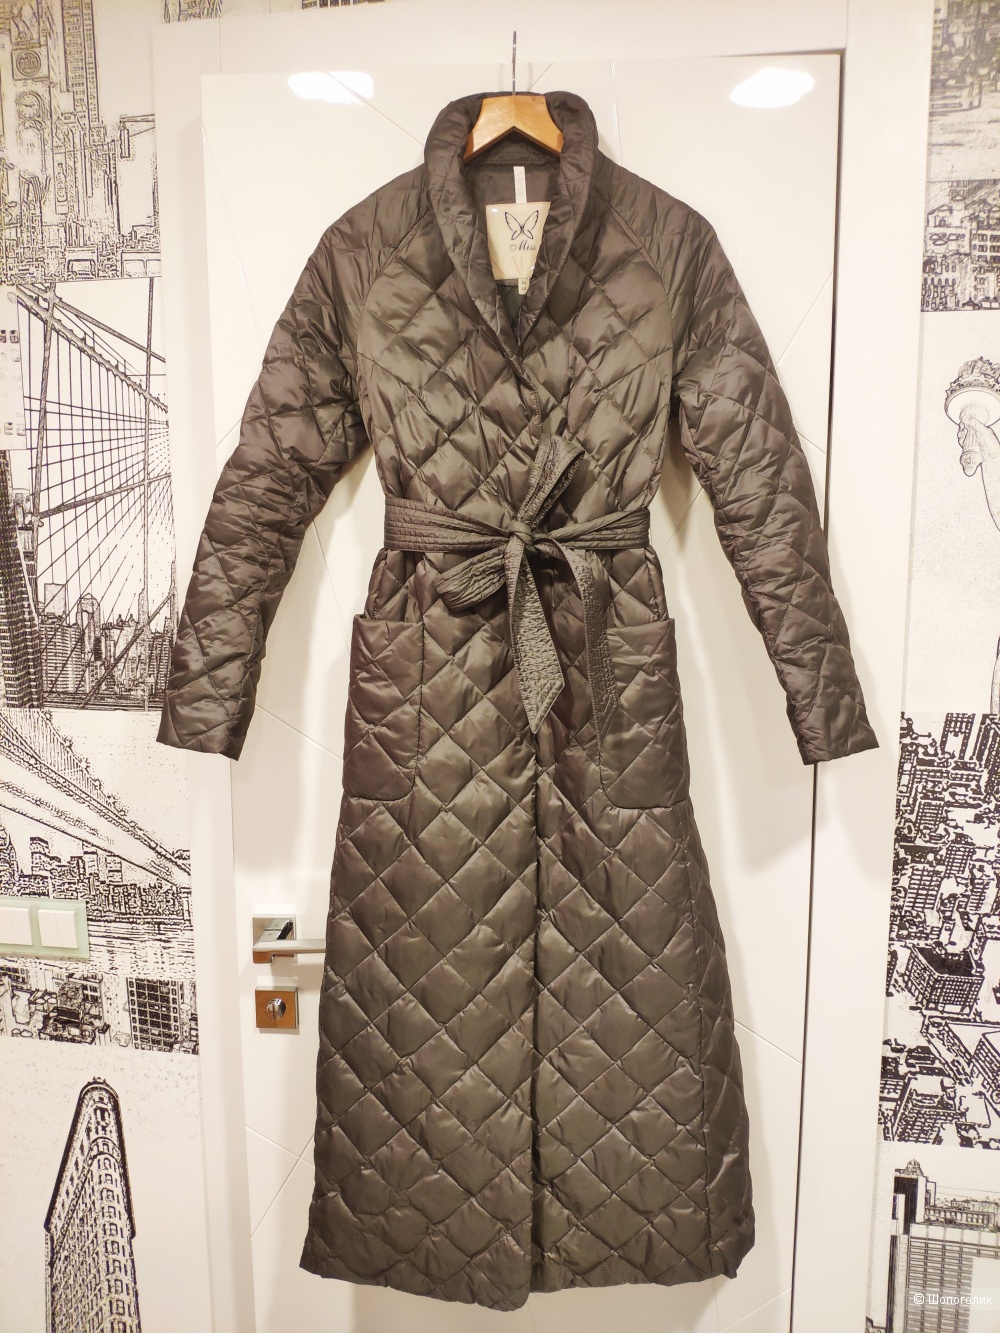 Пальто на пуху Naumi размер S-M